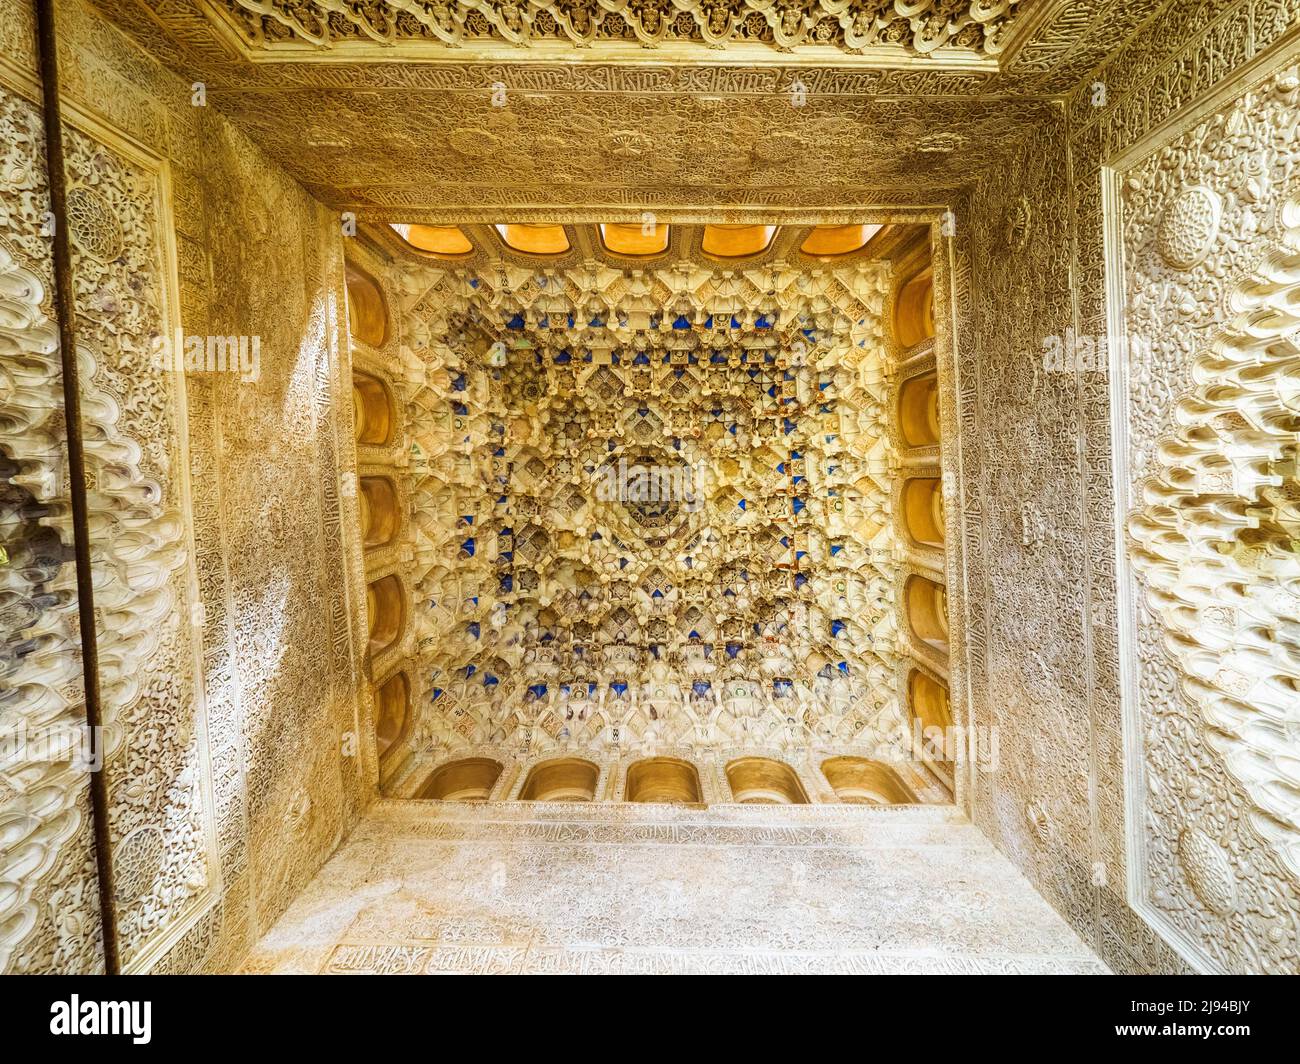 Salle des Rois plafond (Sala de los Reyes) dans les palais royaux de Nasrid - complexe Alhambra - Grenade, Espagne Banque D'Images